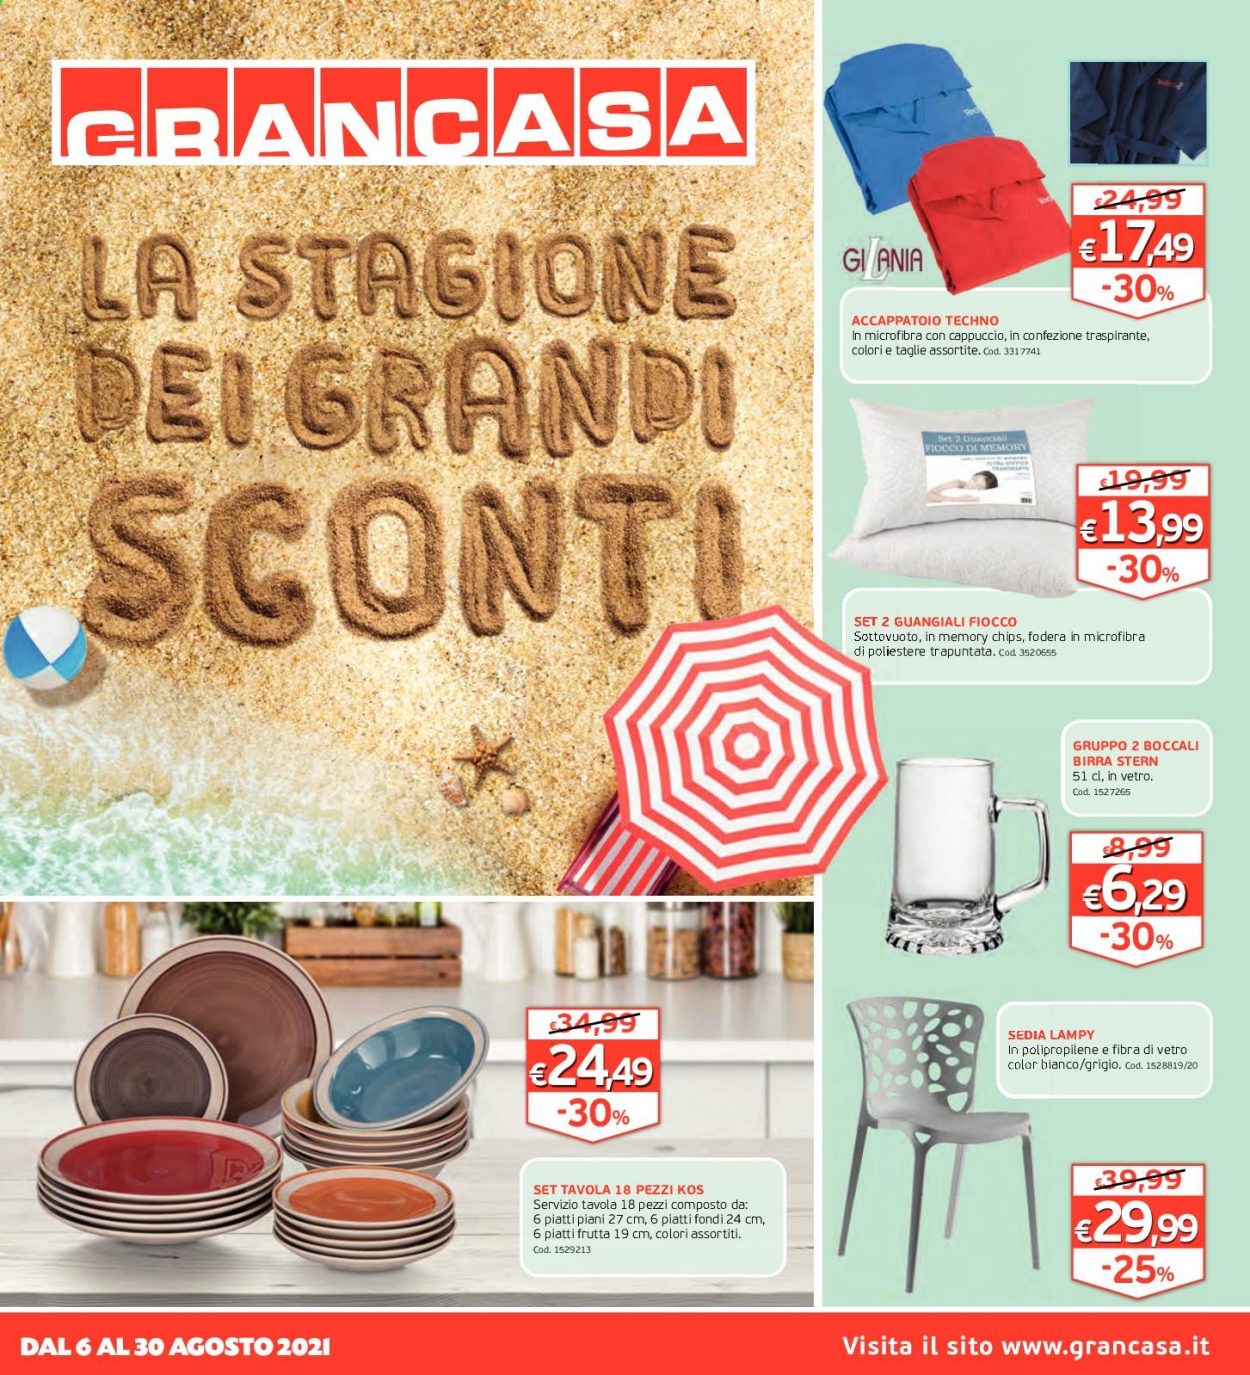 thumbnail - Volantino Grancasa - 6/8/2021 - 30/8/2021 - Prodotti in offerta - servizio tavola, piatti, accappatoio, sedia. Pagina 1.